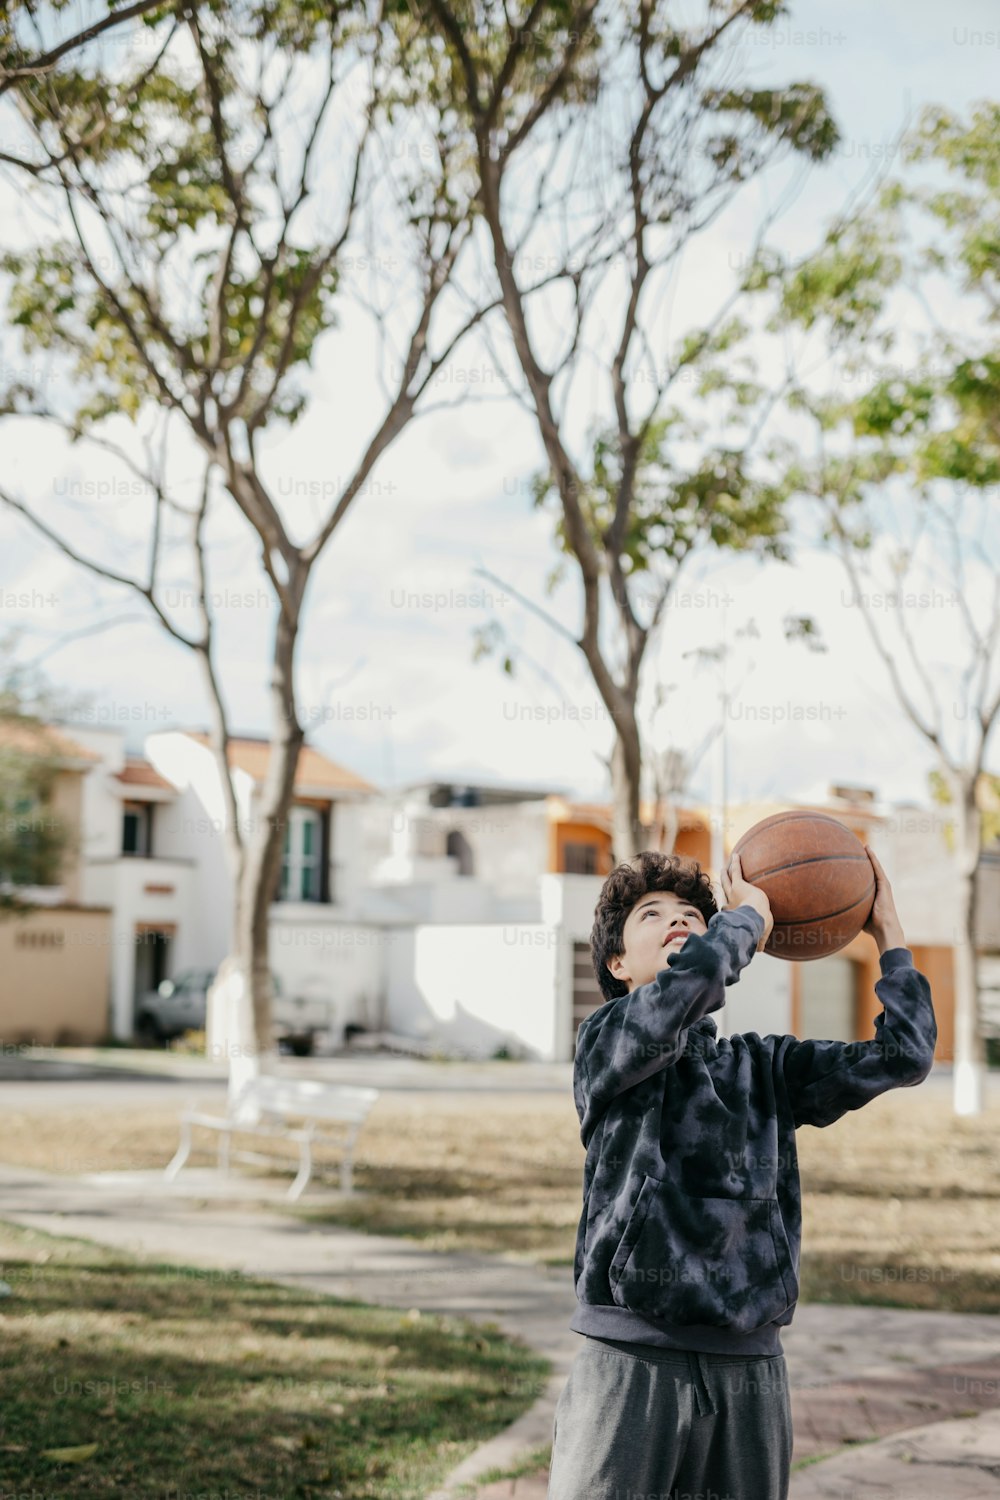 ein kleiner Junge, der einen Basketball vor sein Gesicht hält